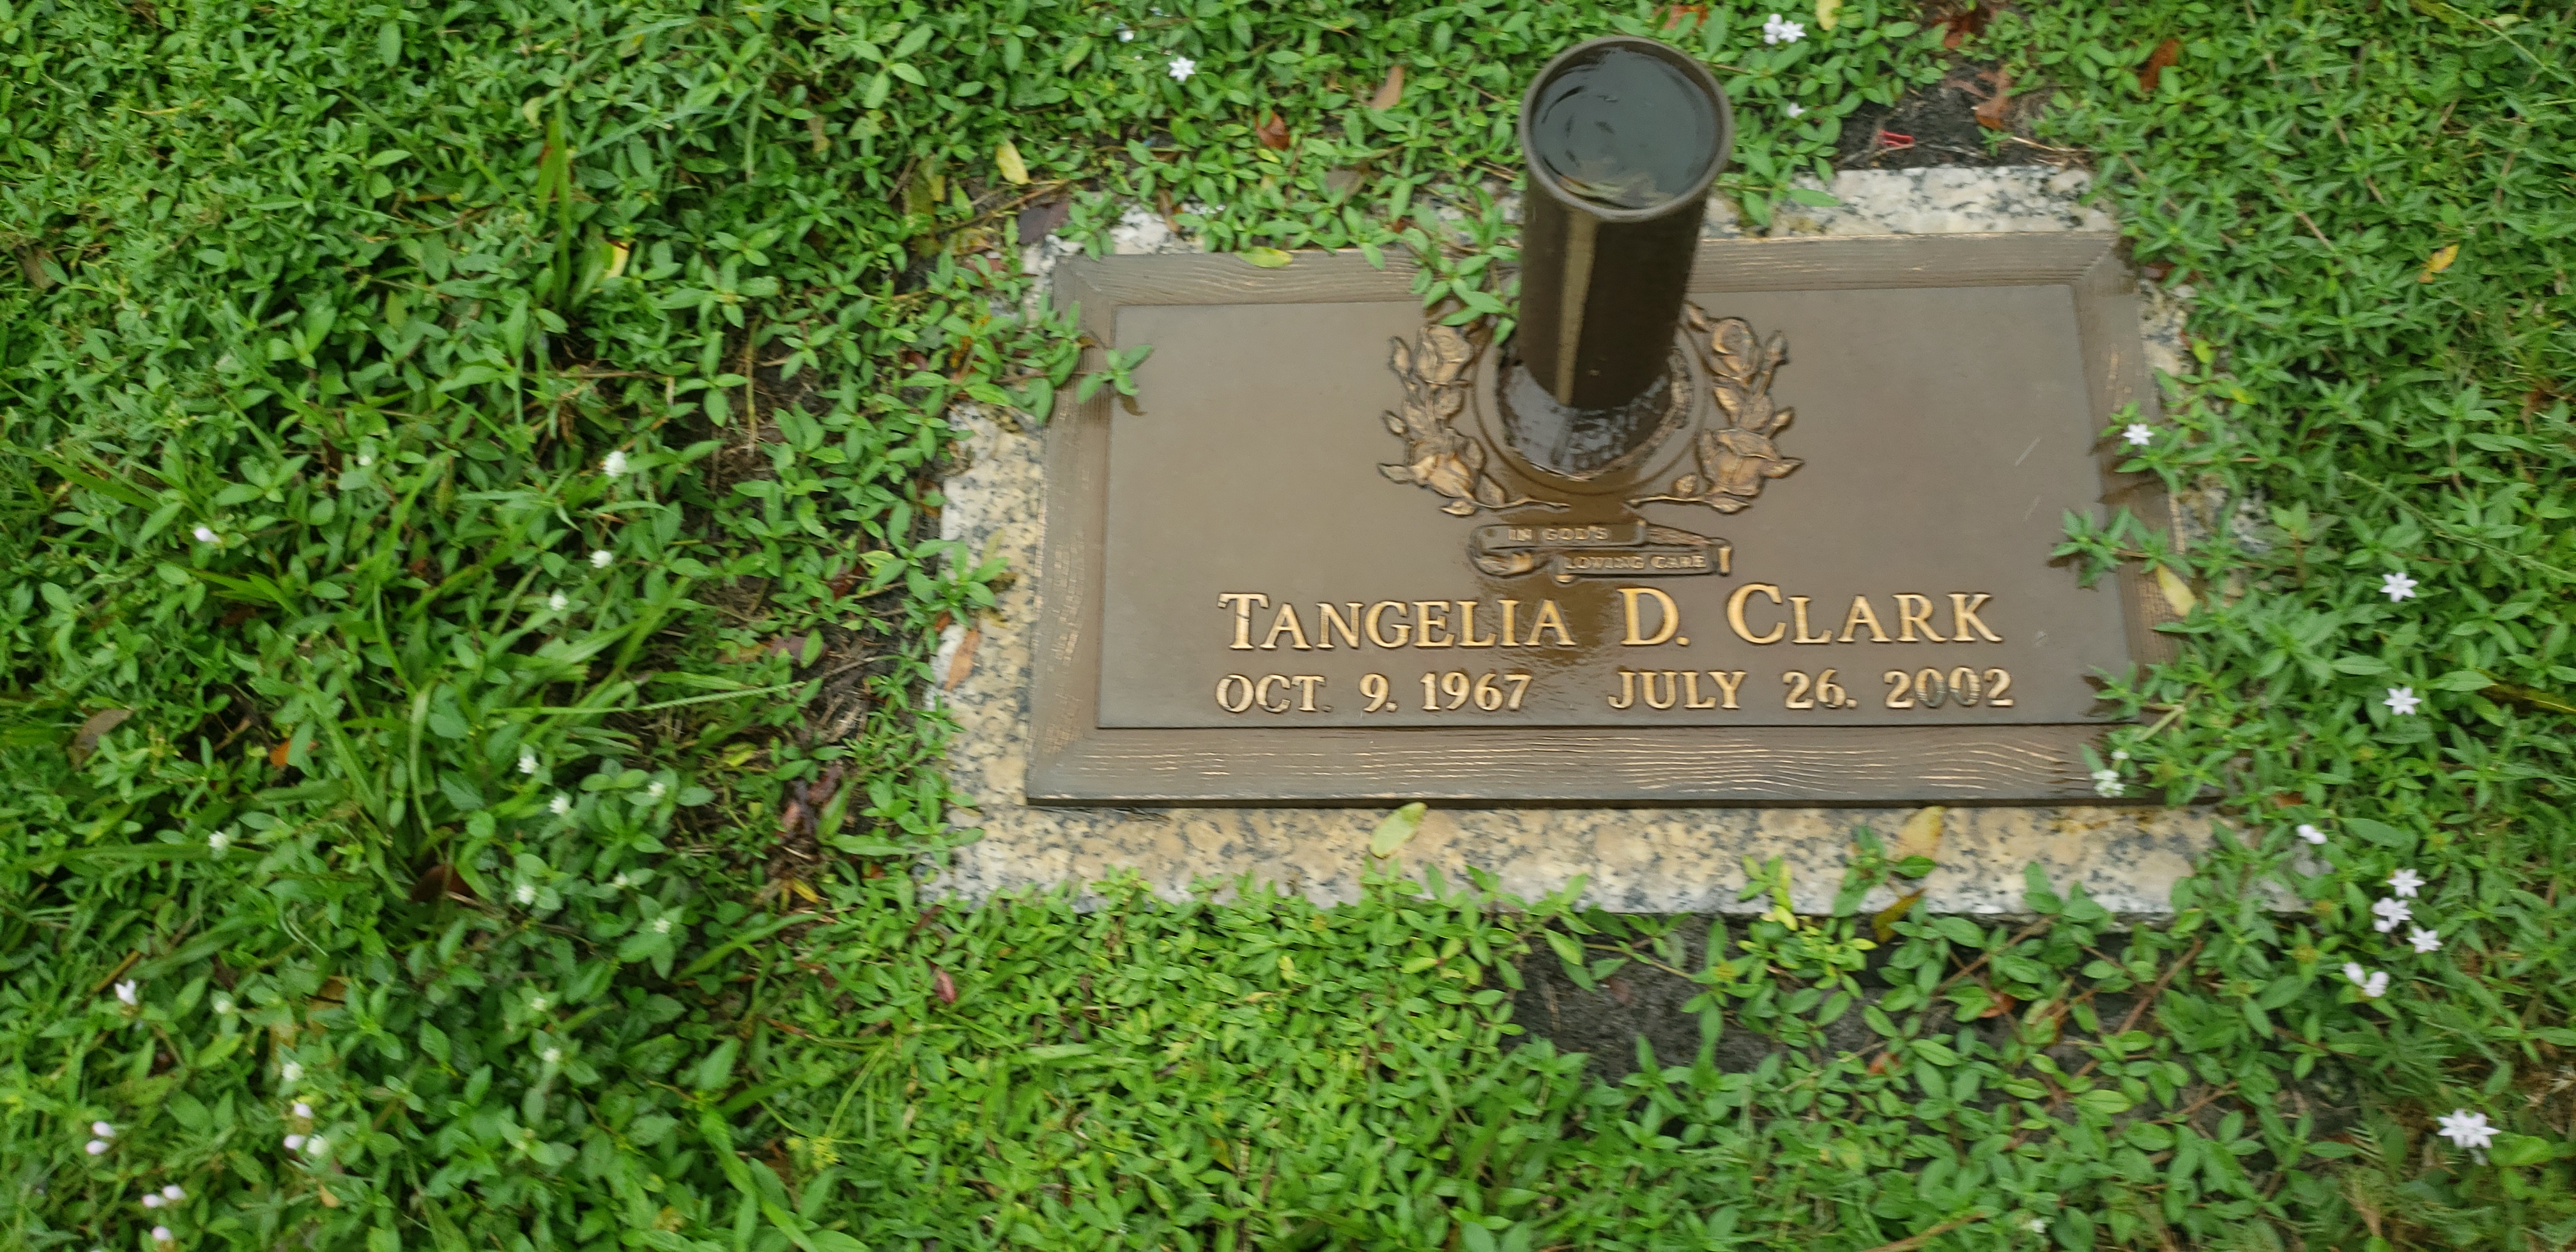 Tangelia D Clark